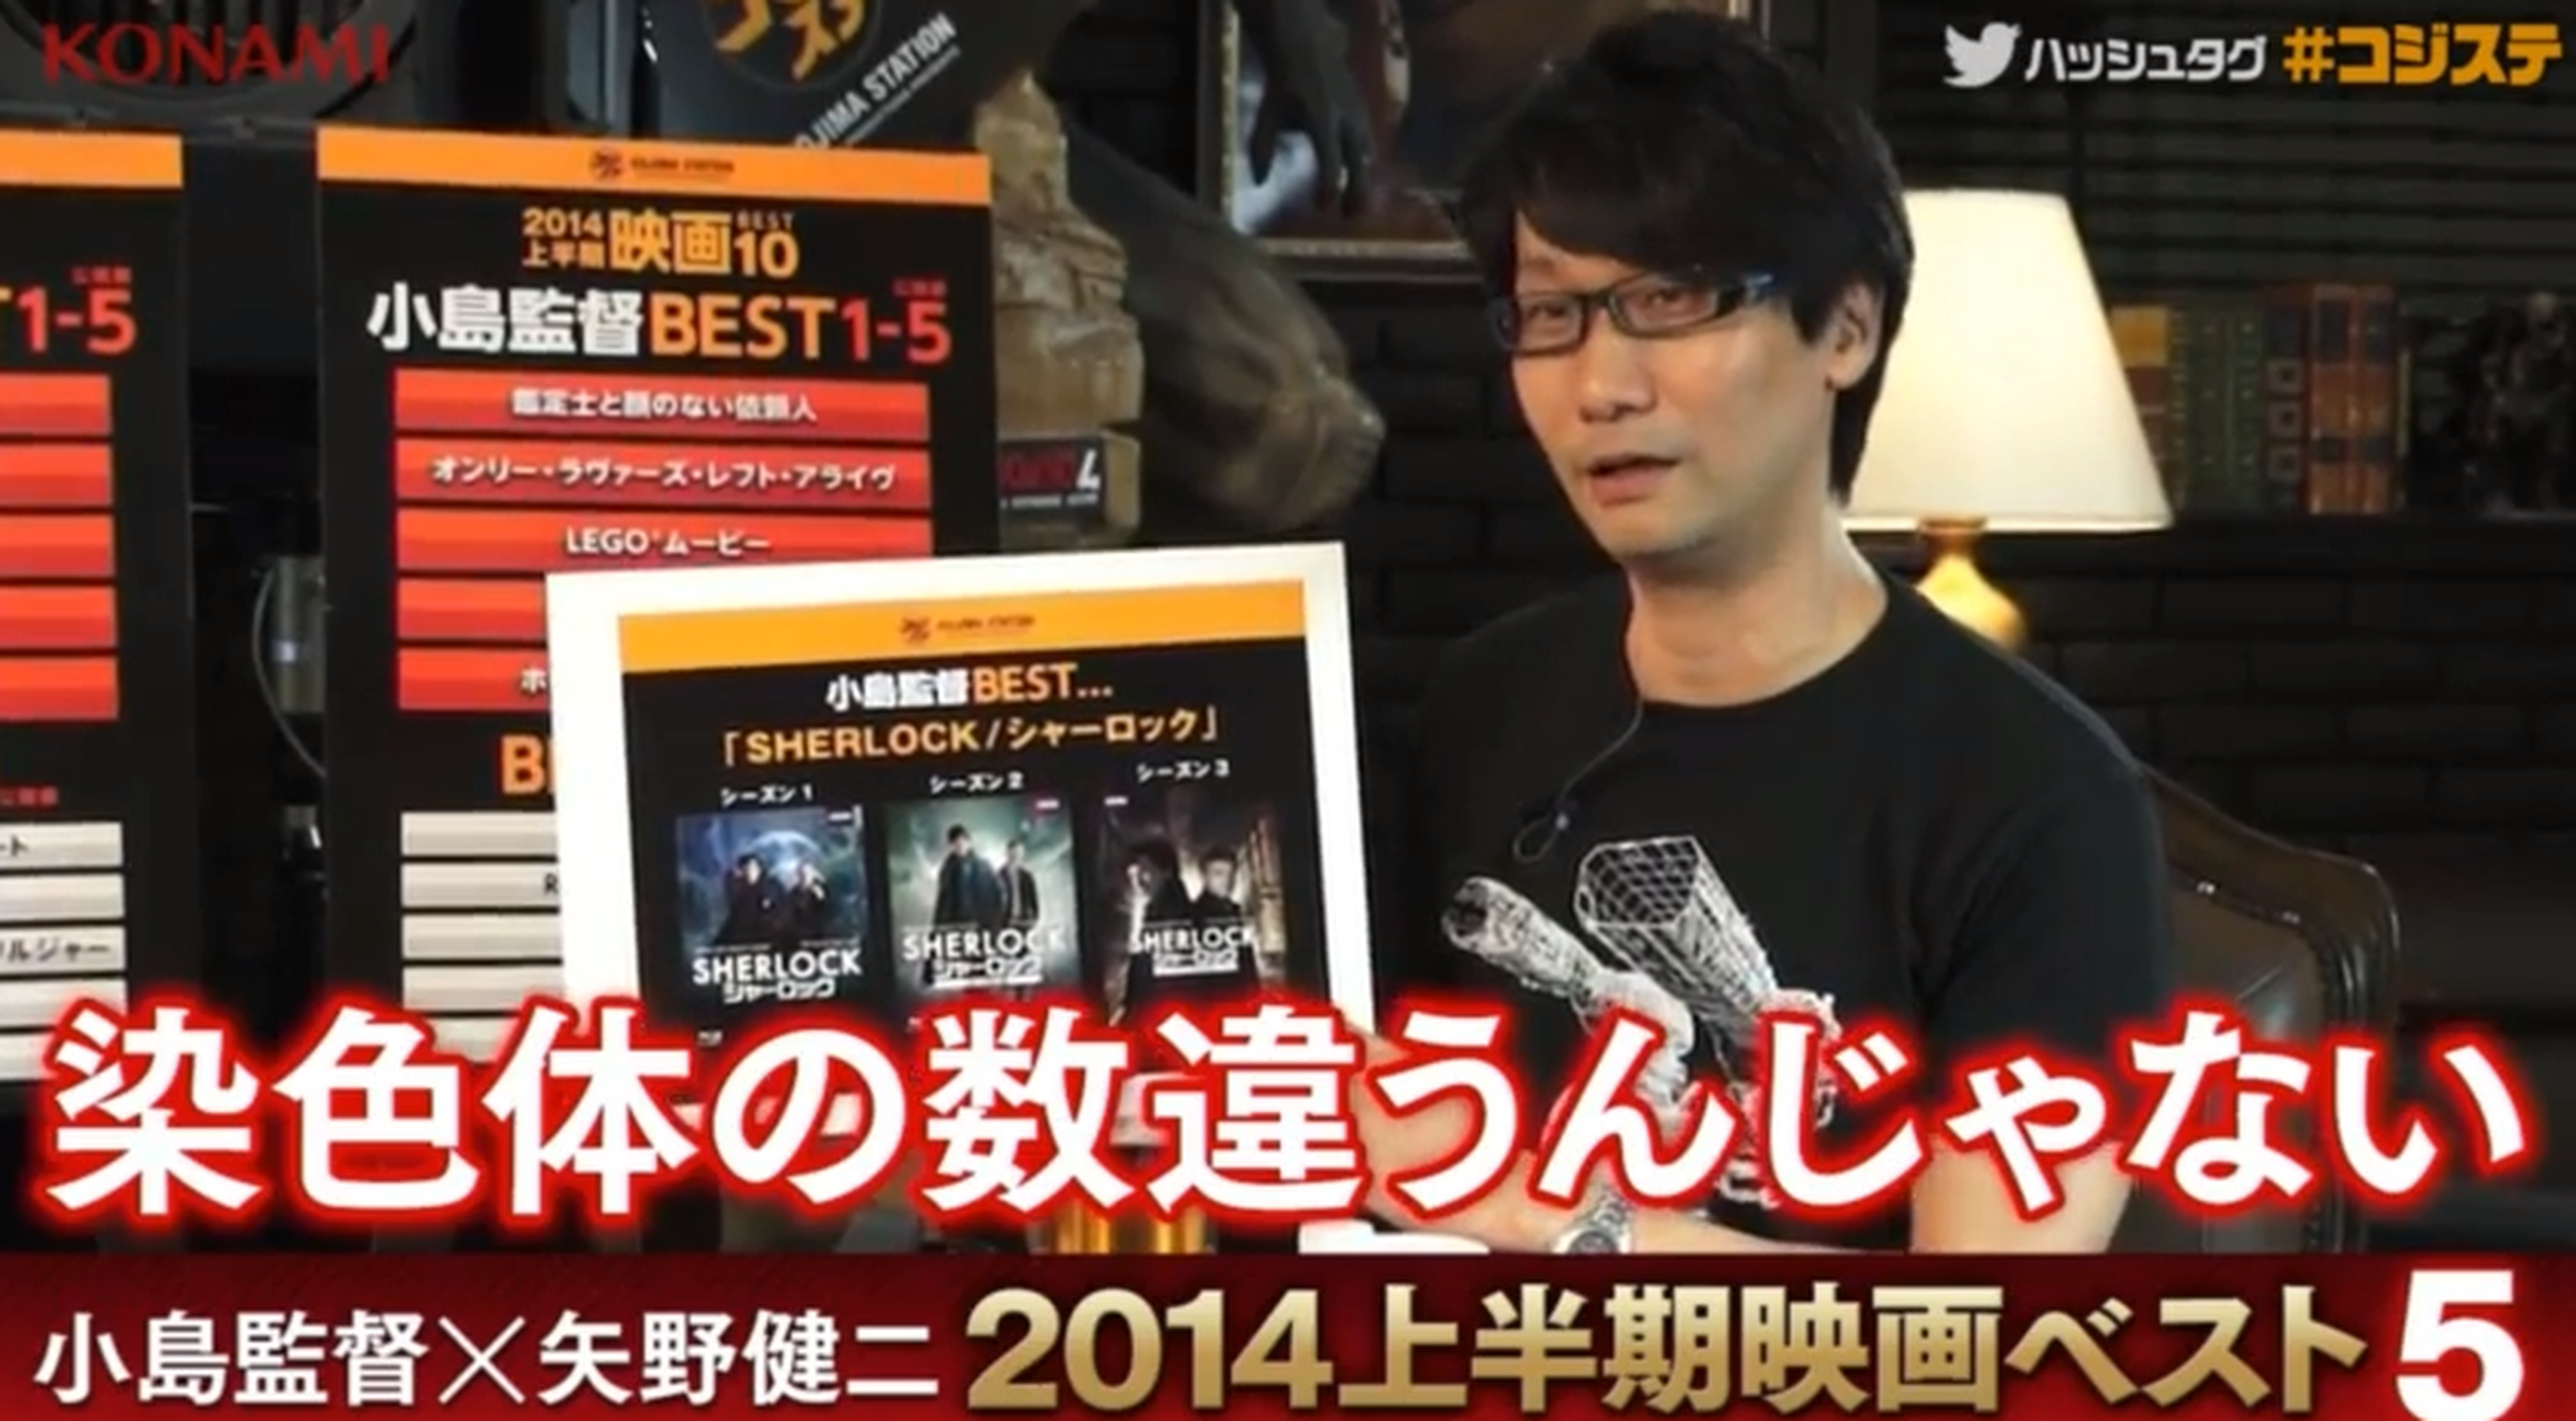 Hideo Kojima habla de sus estrenos en DVD favoritos